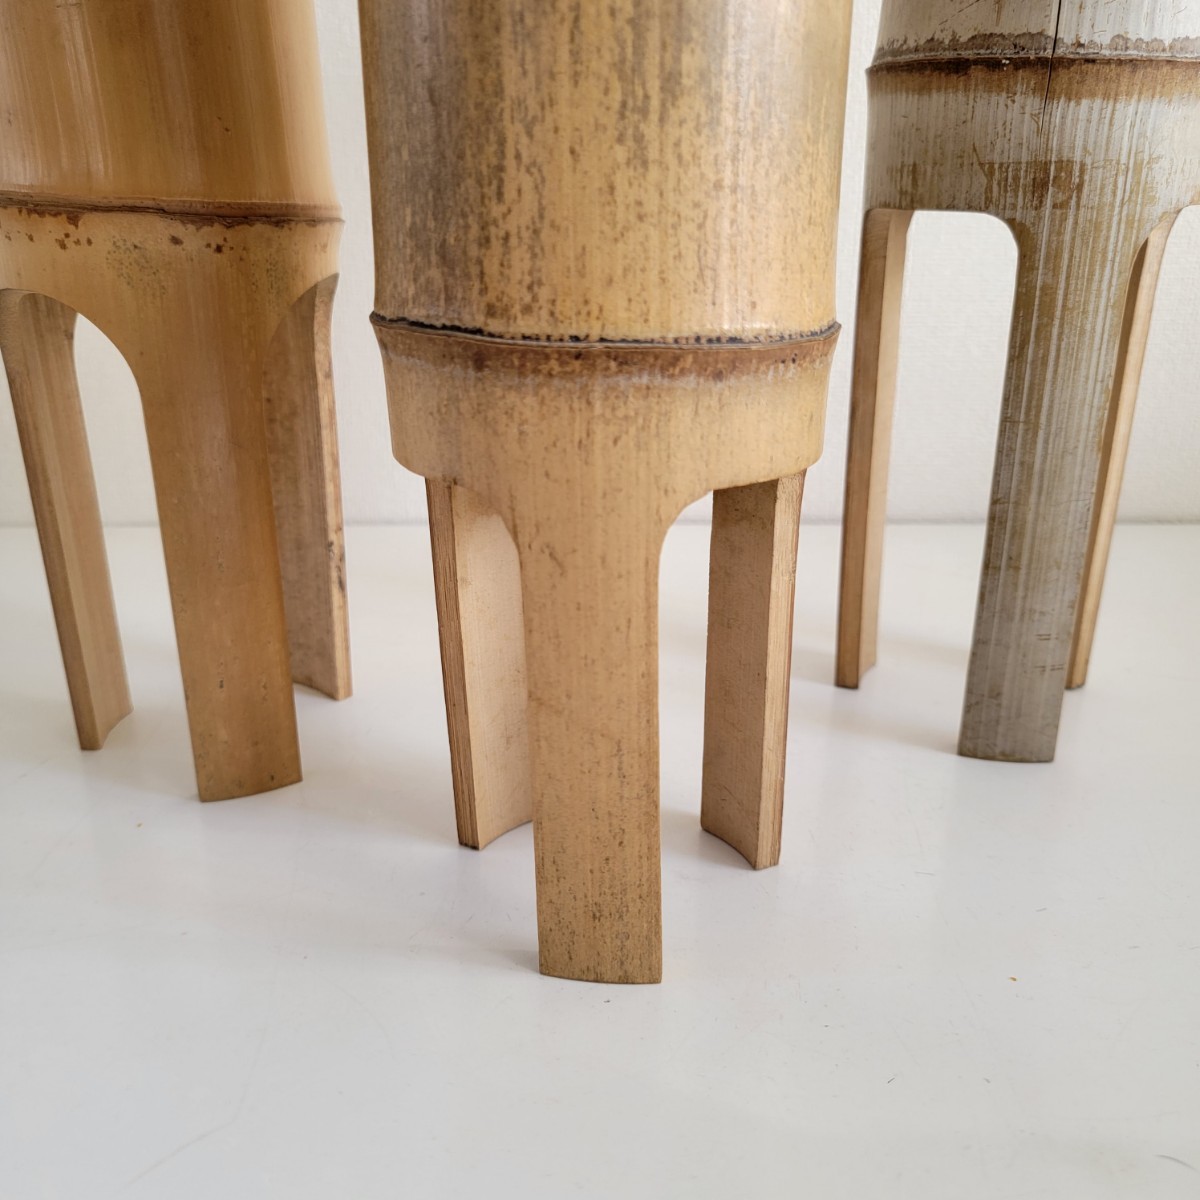 いけばな 竹花器 カナエ 鼎 ３個セット 寸胴 池坊 華道師範所蔵品 和モダン デザイン フラワーベース 花瓶 花器 日本 伝統 花器の画像6